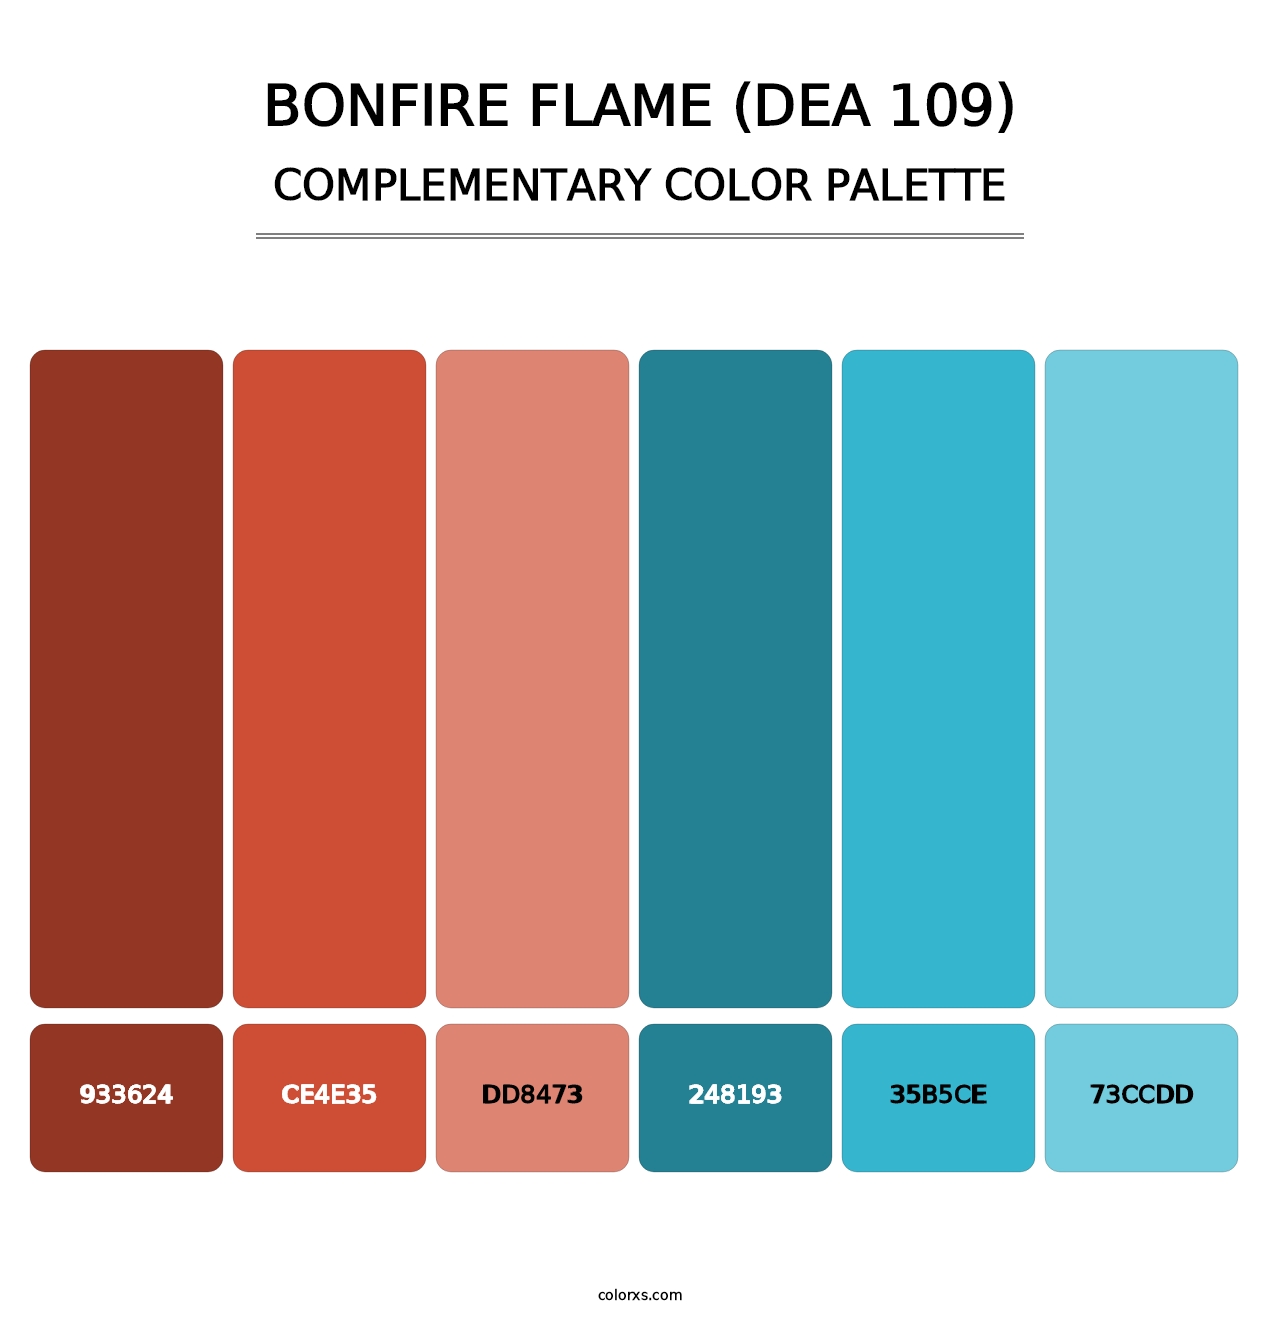 Bonfire Flame (DEA 109) - Complementary Color Palette